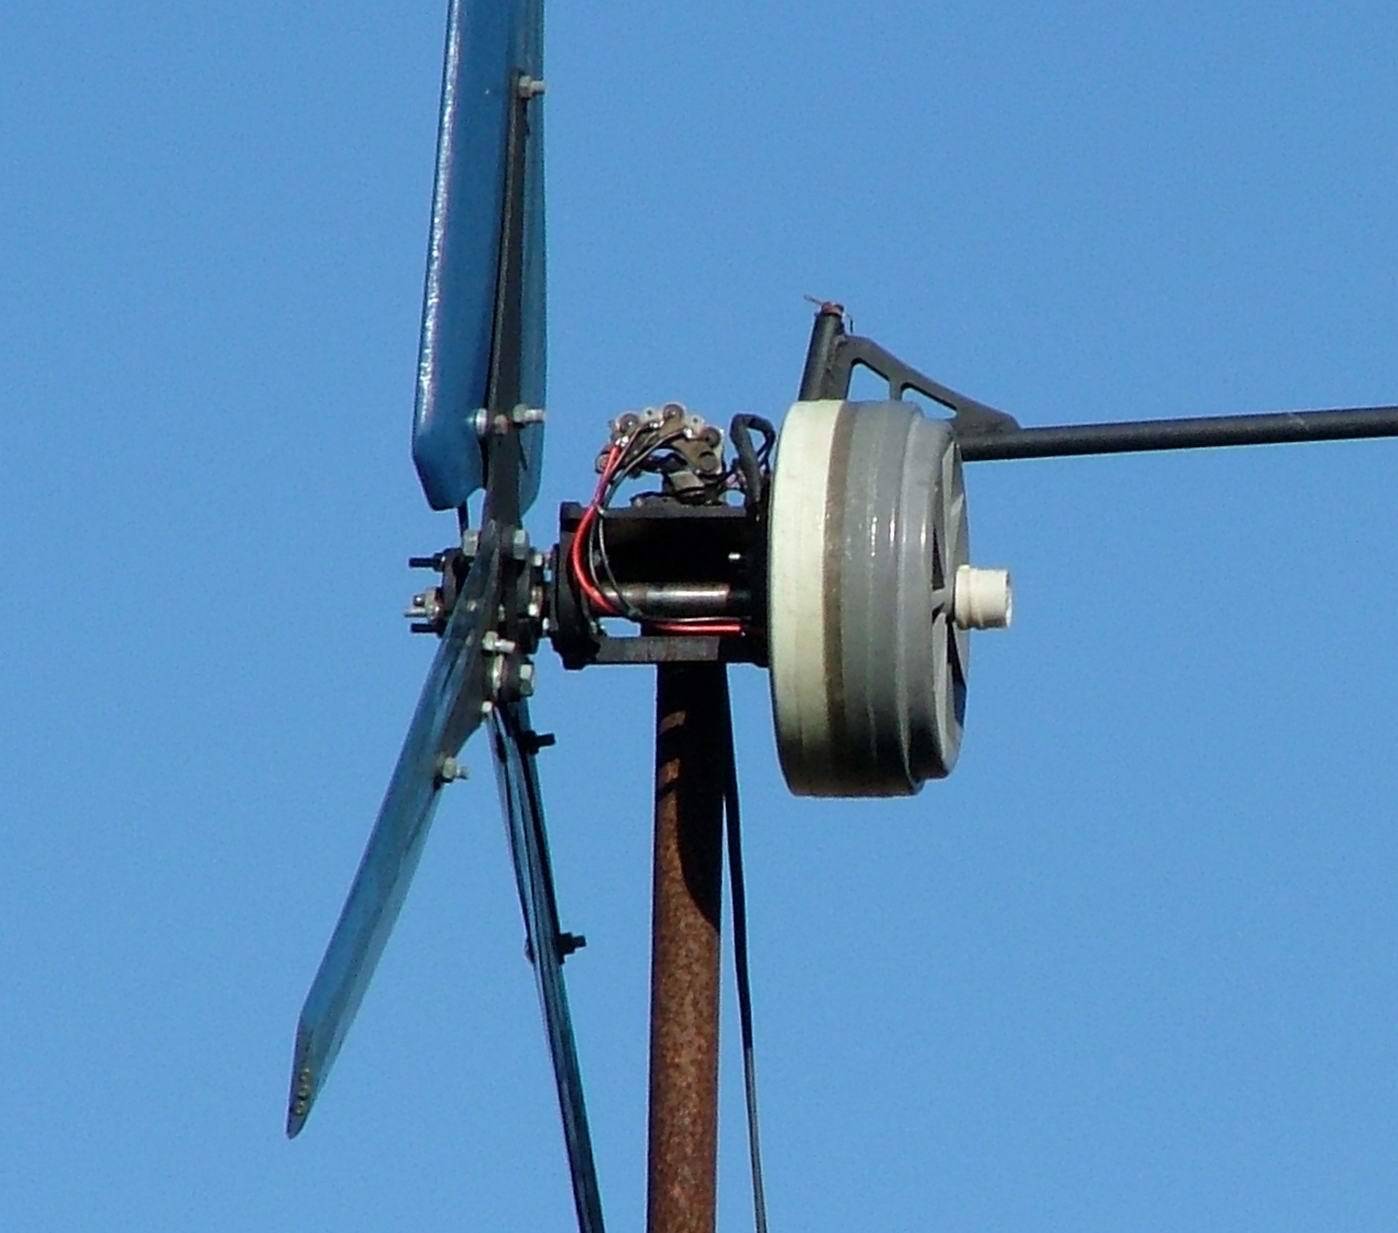 Ветрогенератор для частного дома своими руками из автомобильного генератора, фото, видео